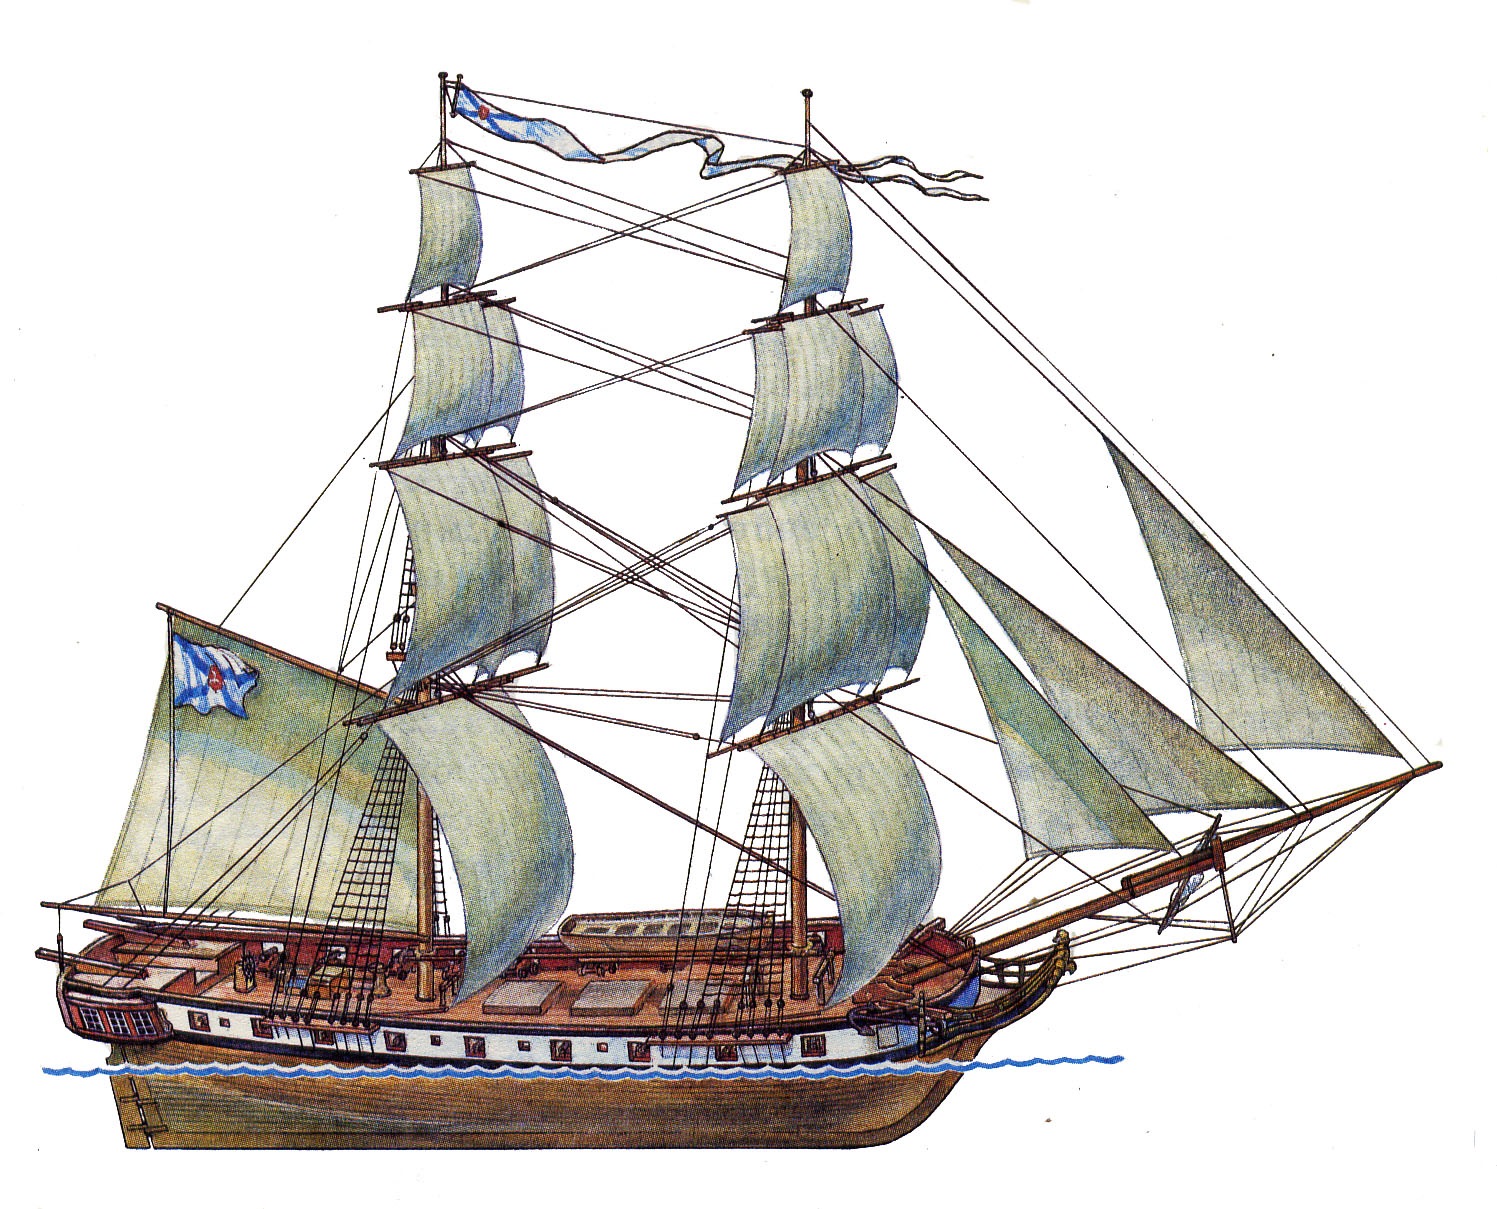 Бриг фрегат. Меркурий Бриг, 1820. Меркурий Фрегат, 1820. Бриг корабль 17 века. Парусник Бриг 17 века.